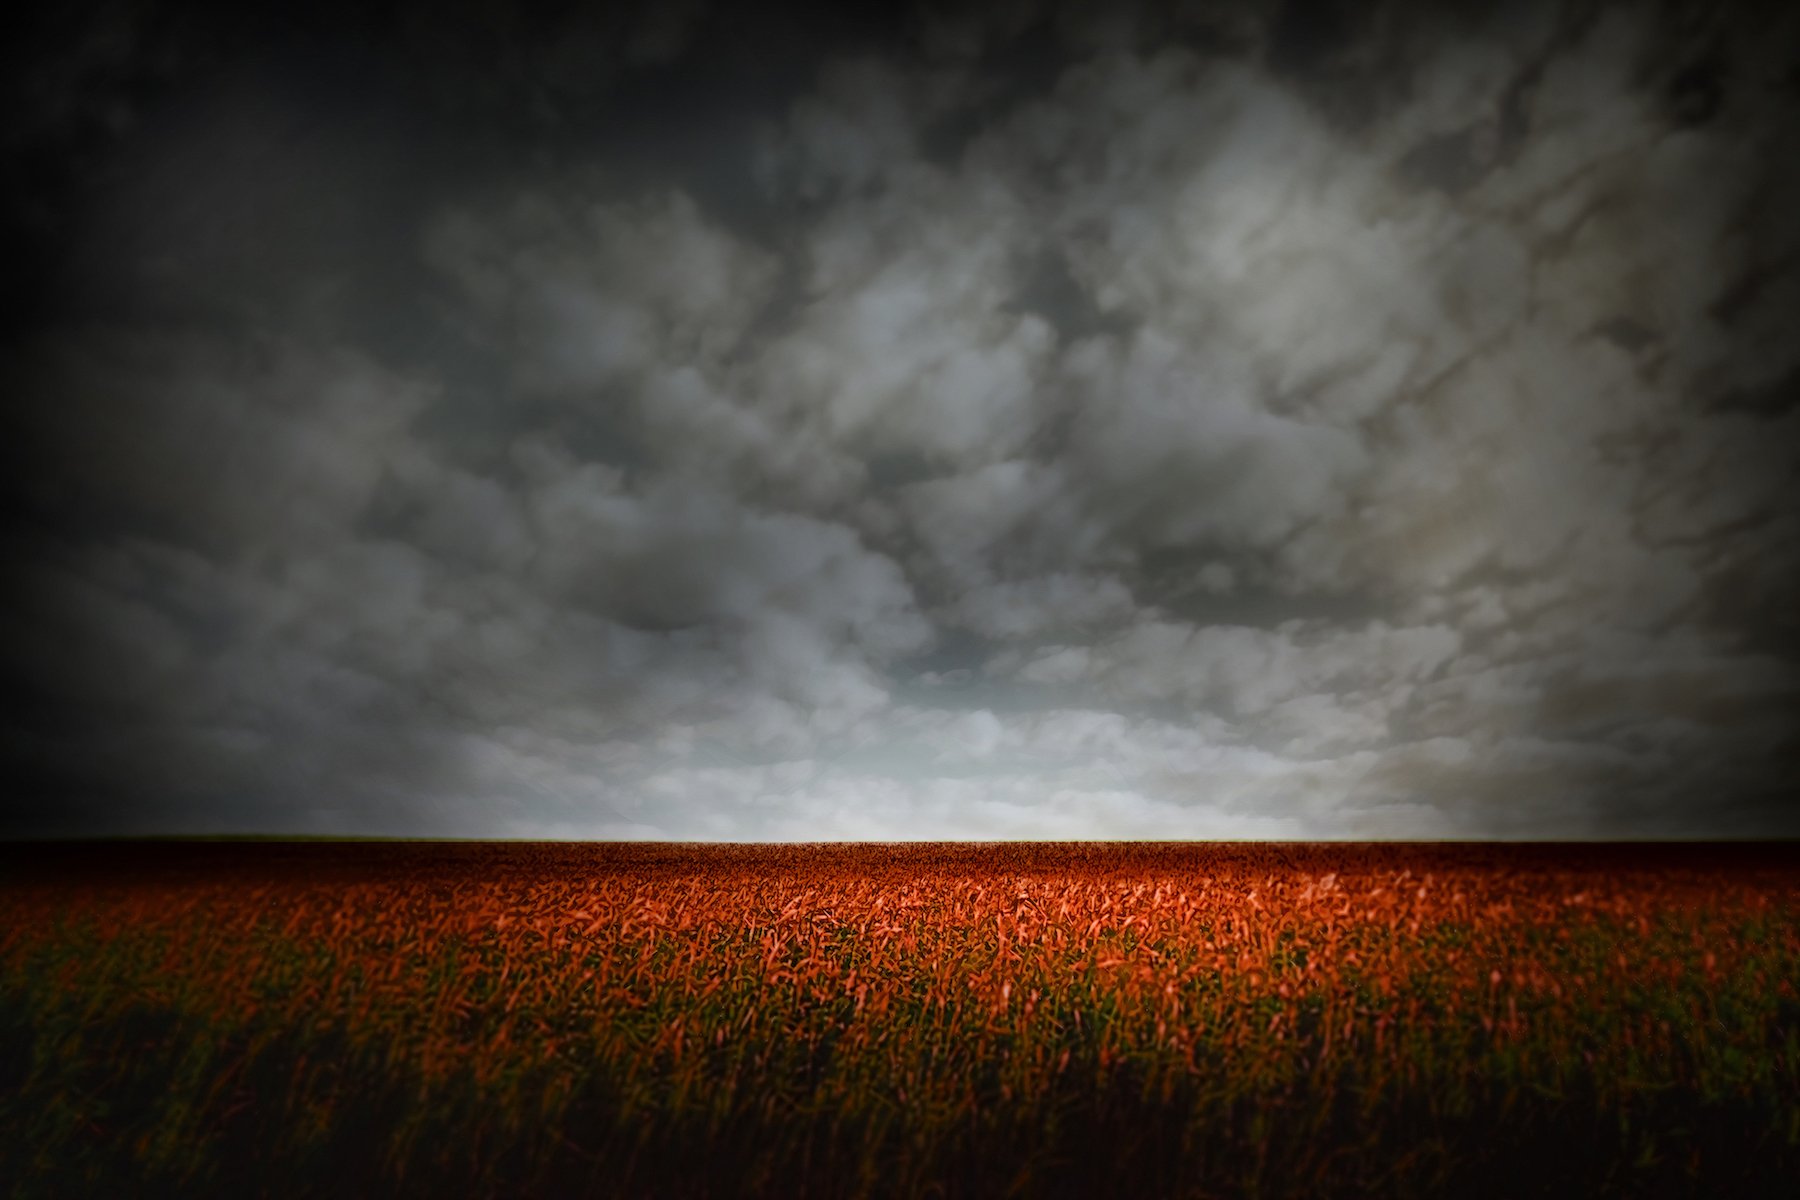  Strawberry Fields, 24” x 36”, digital photograph 